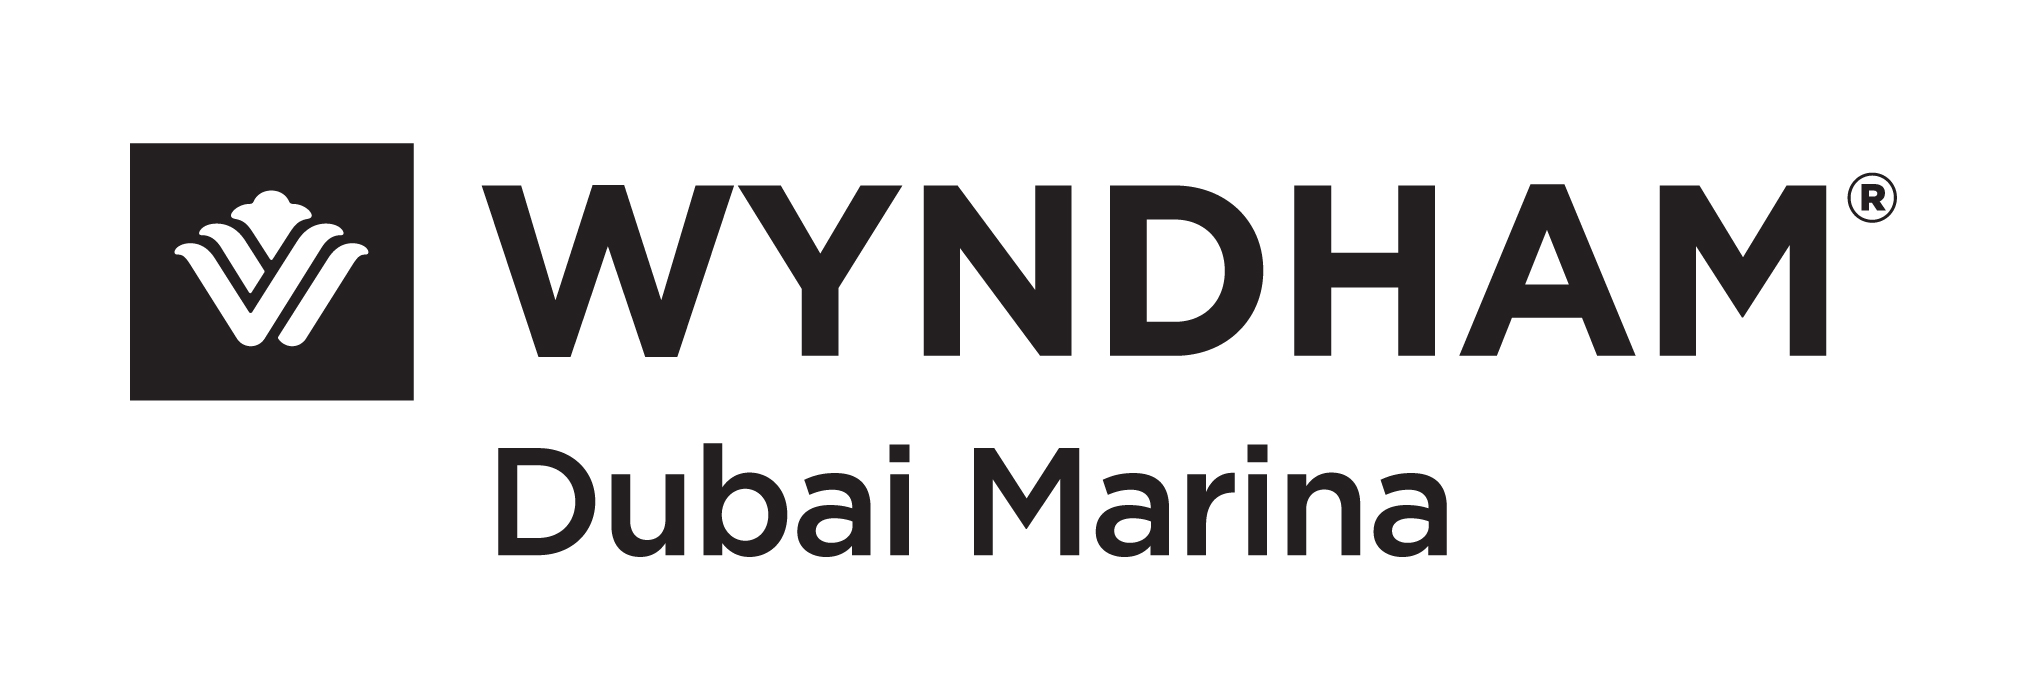 Wyndham Tryp Hotel logo